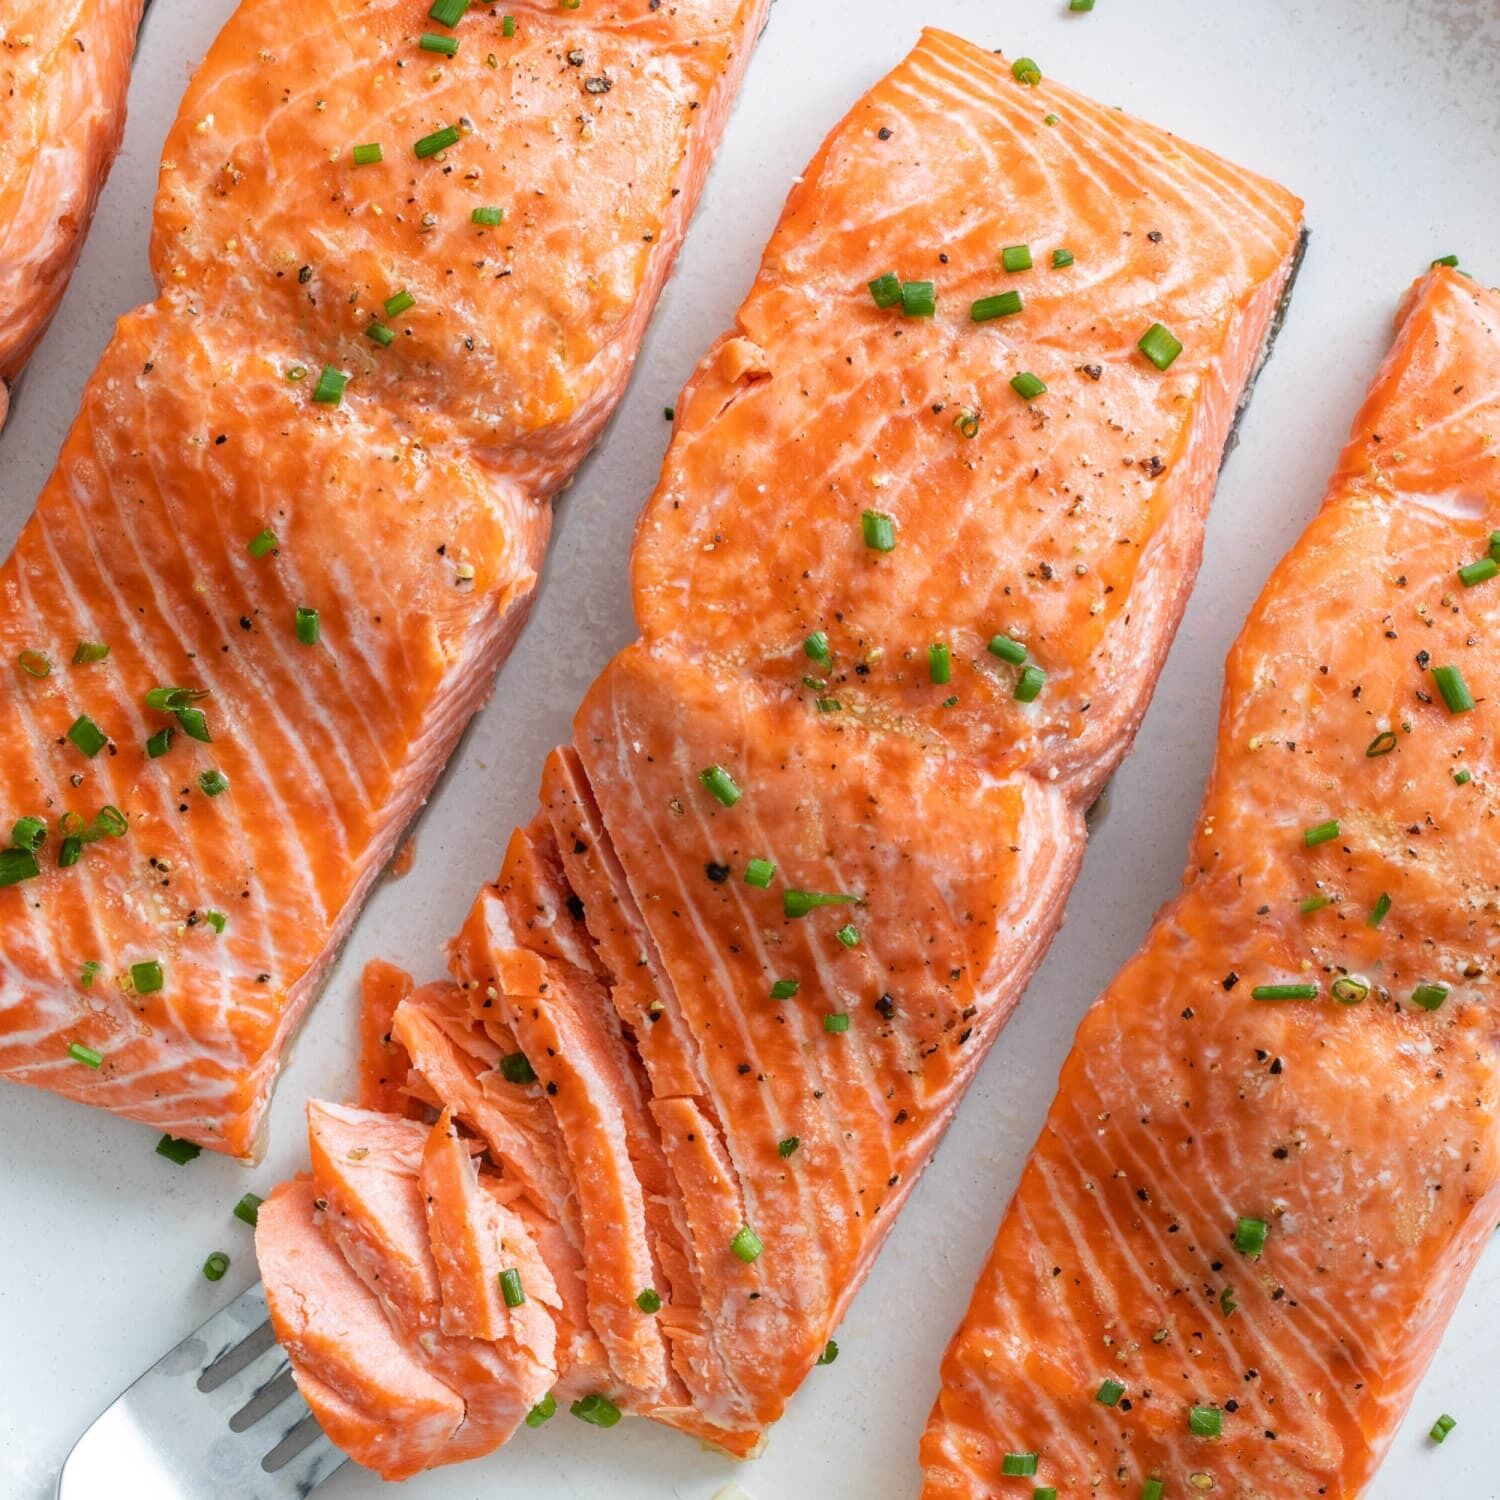 Salmon recipe in the oven